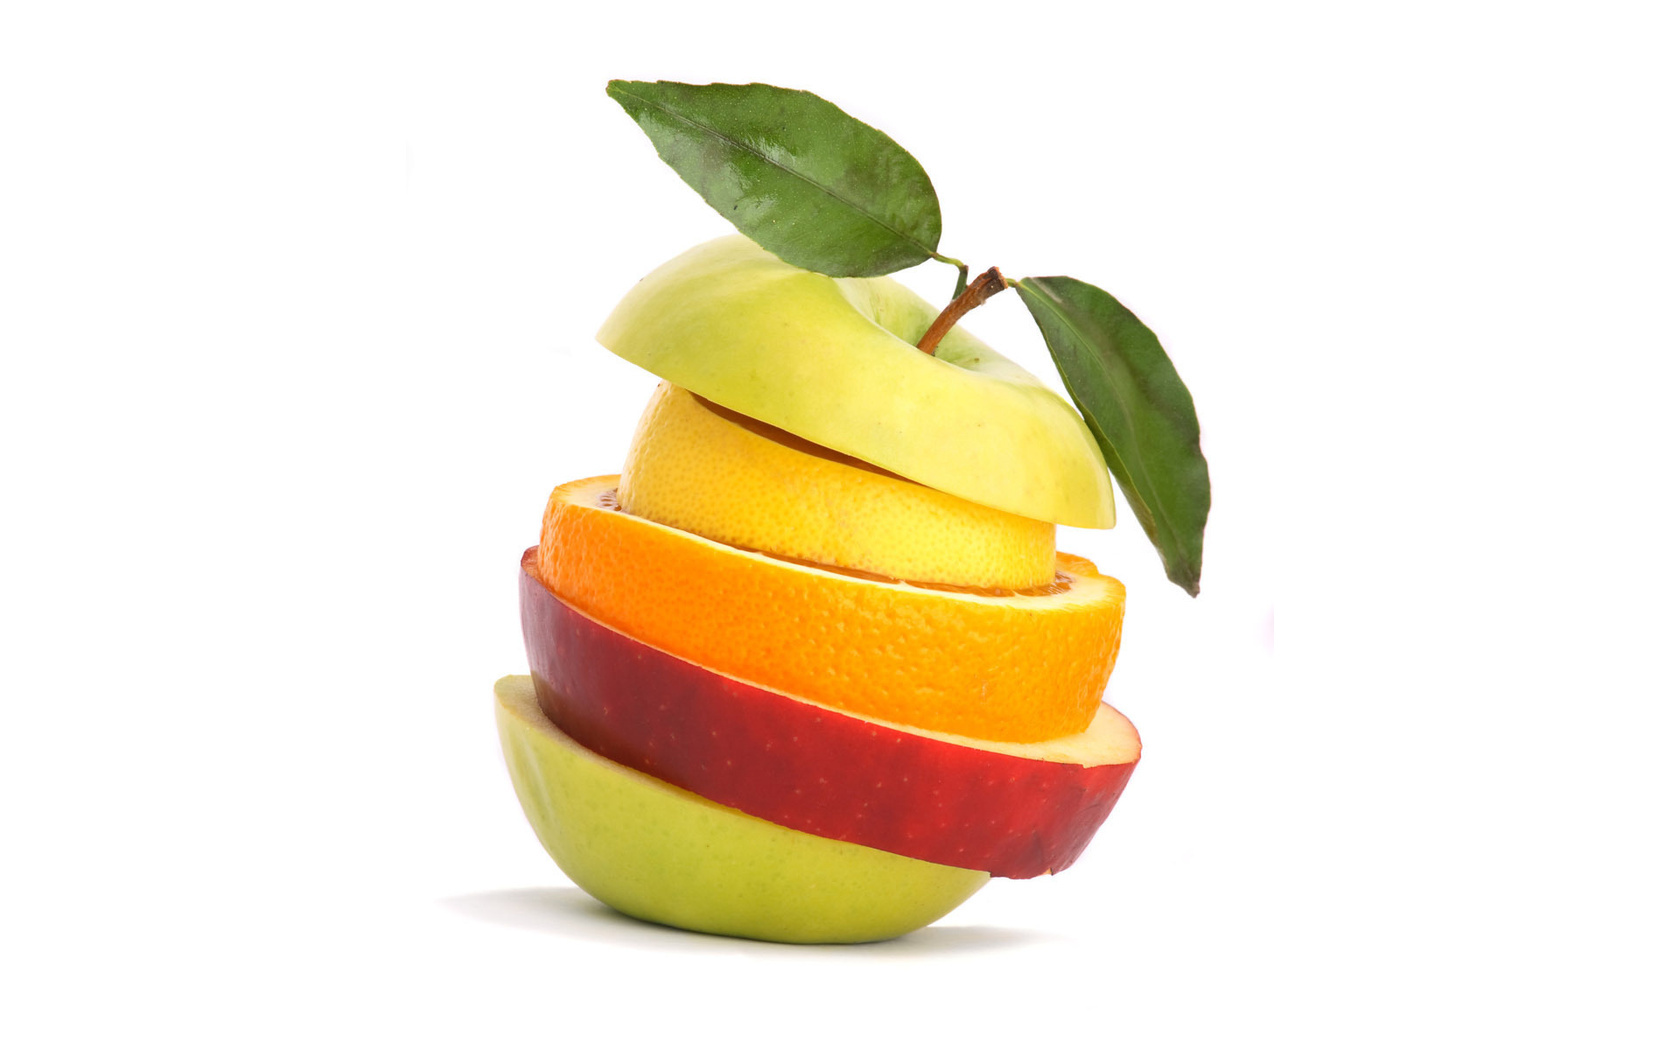 food, fruits Image for desktop